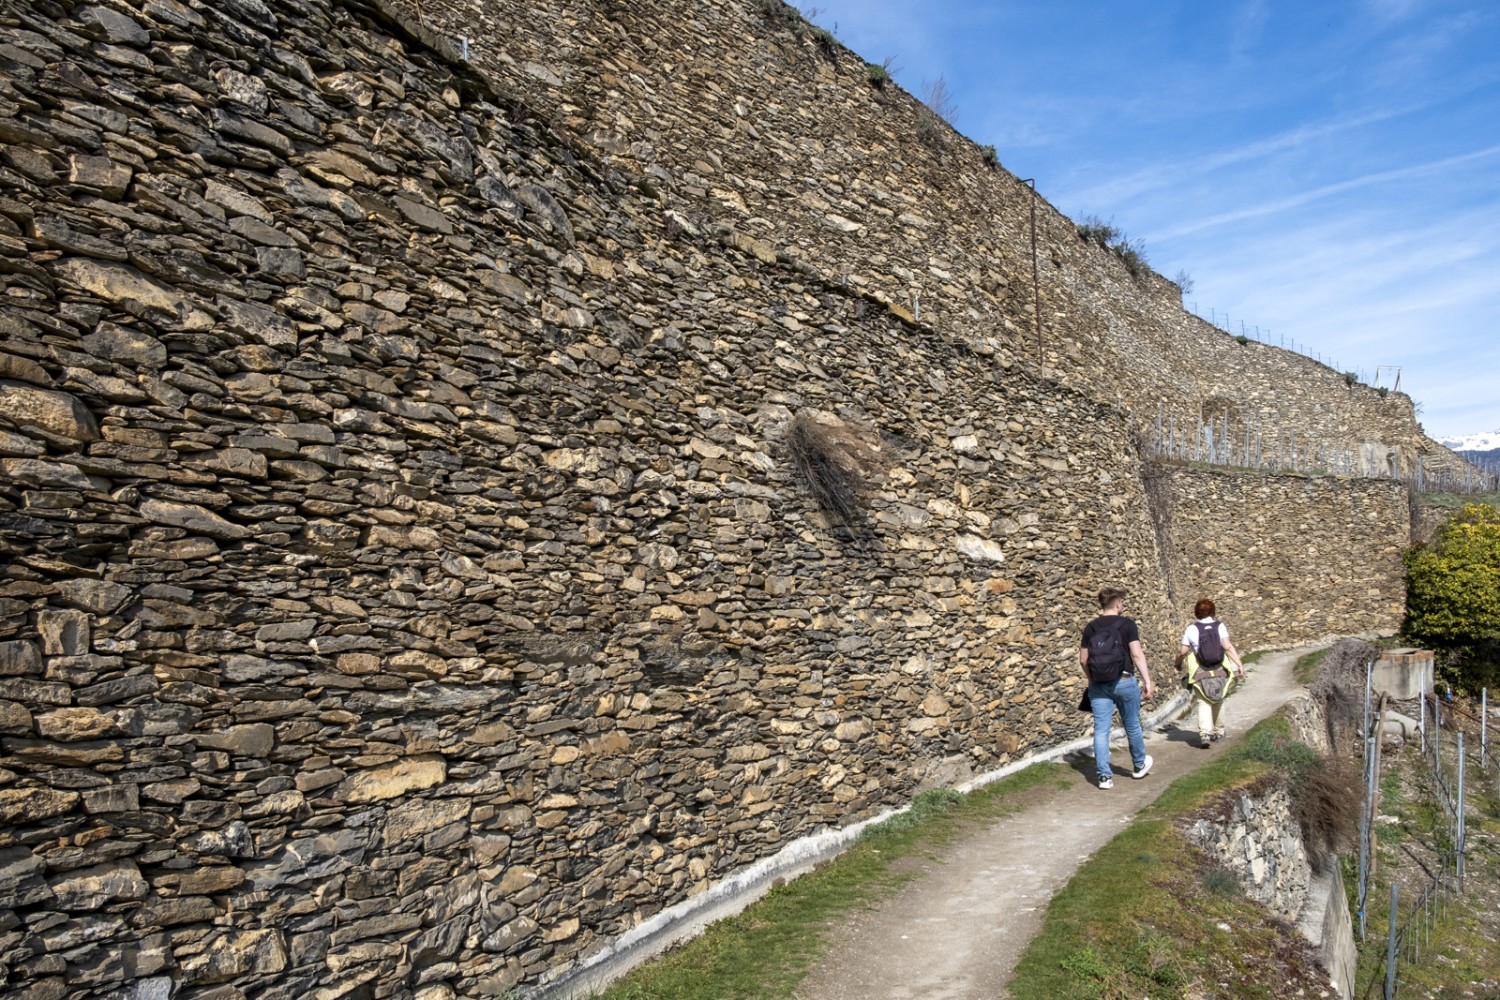 Les murs de pierres sèches mesurent jusqu’à huit mètres de haut. Photo: Markus Ruff